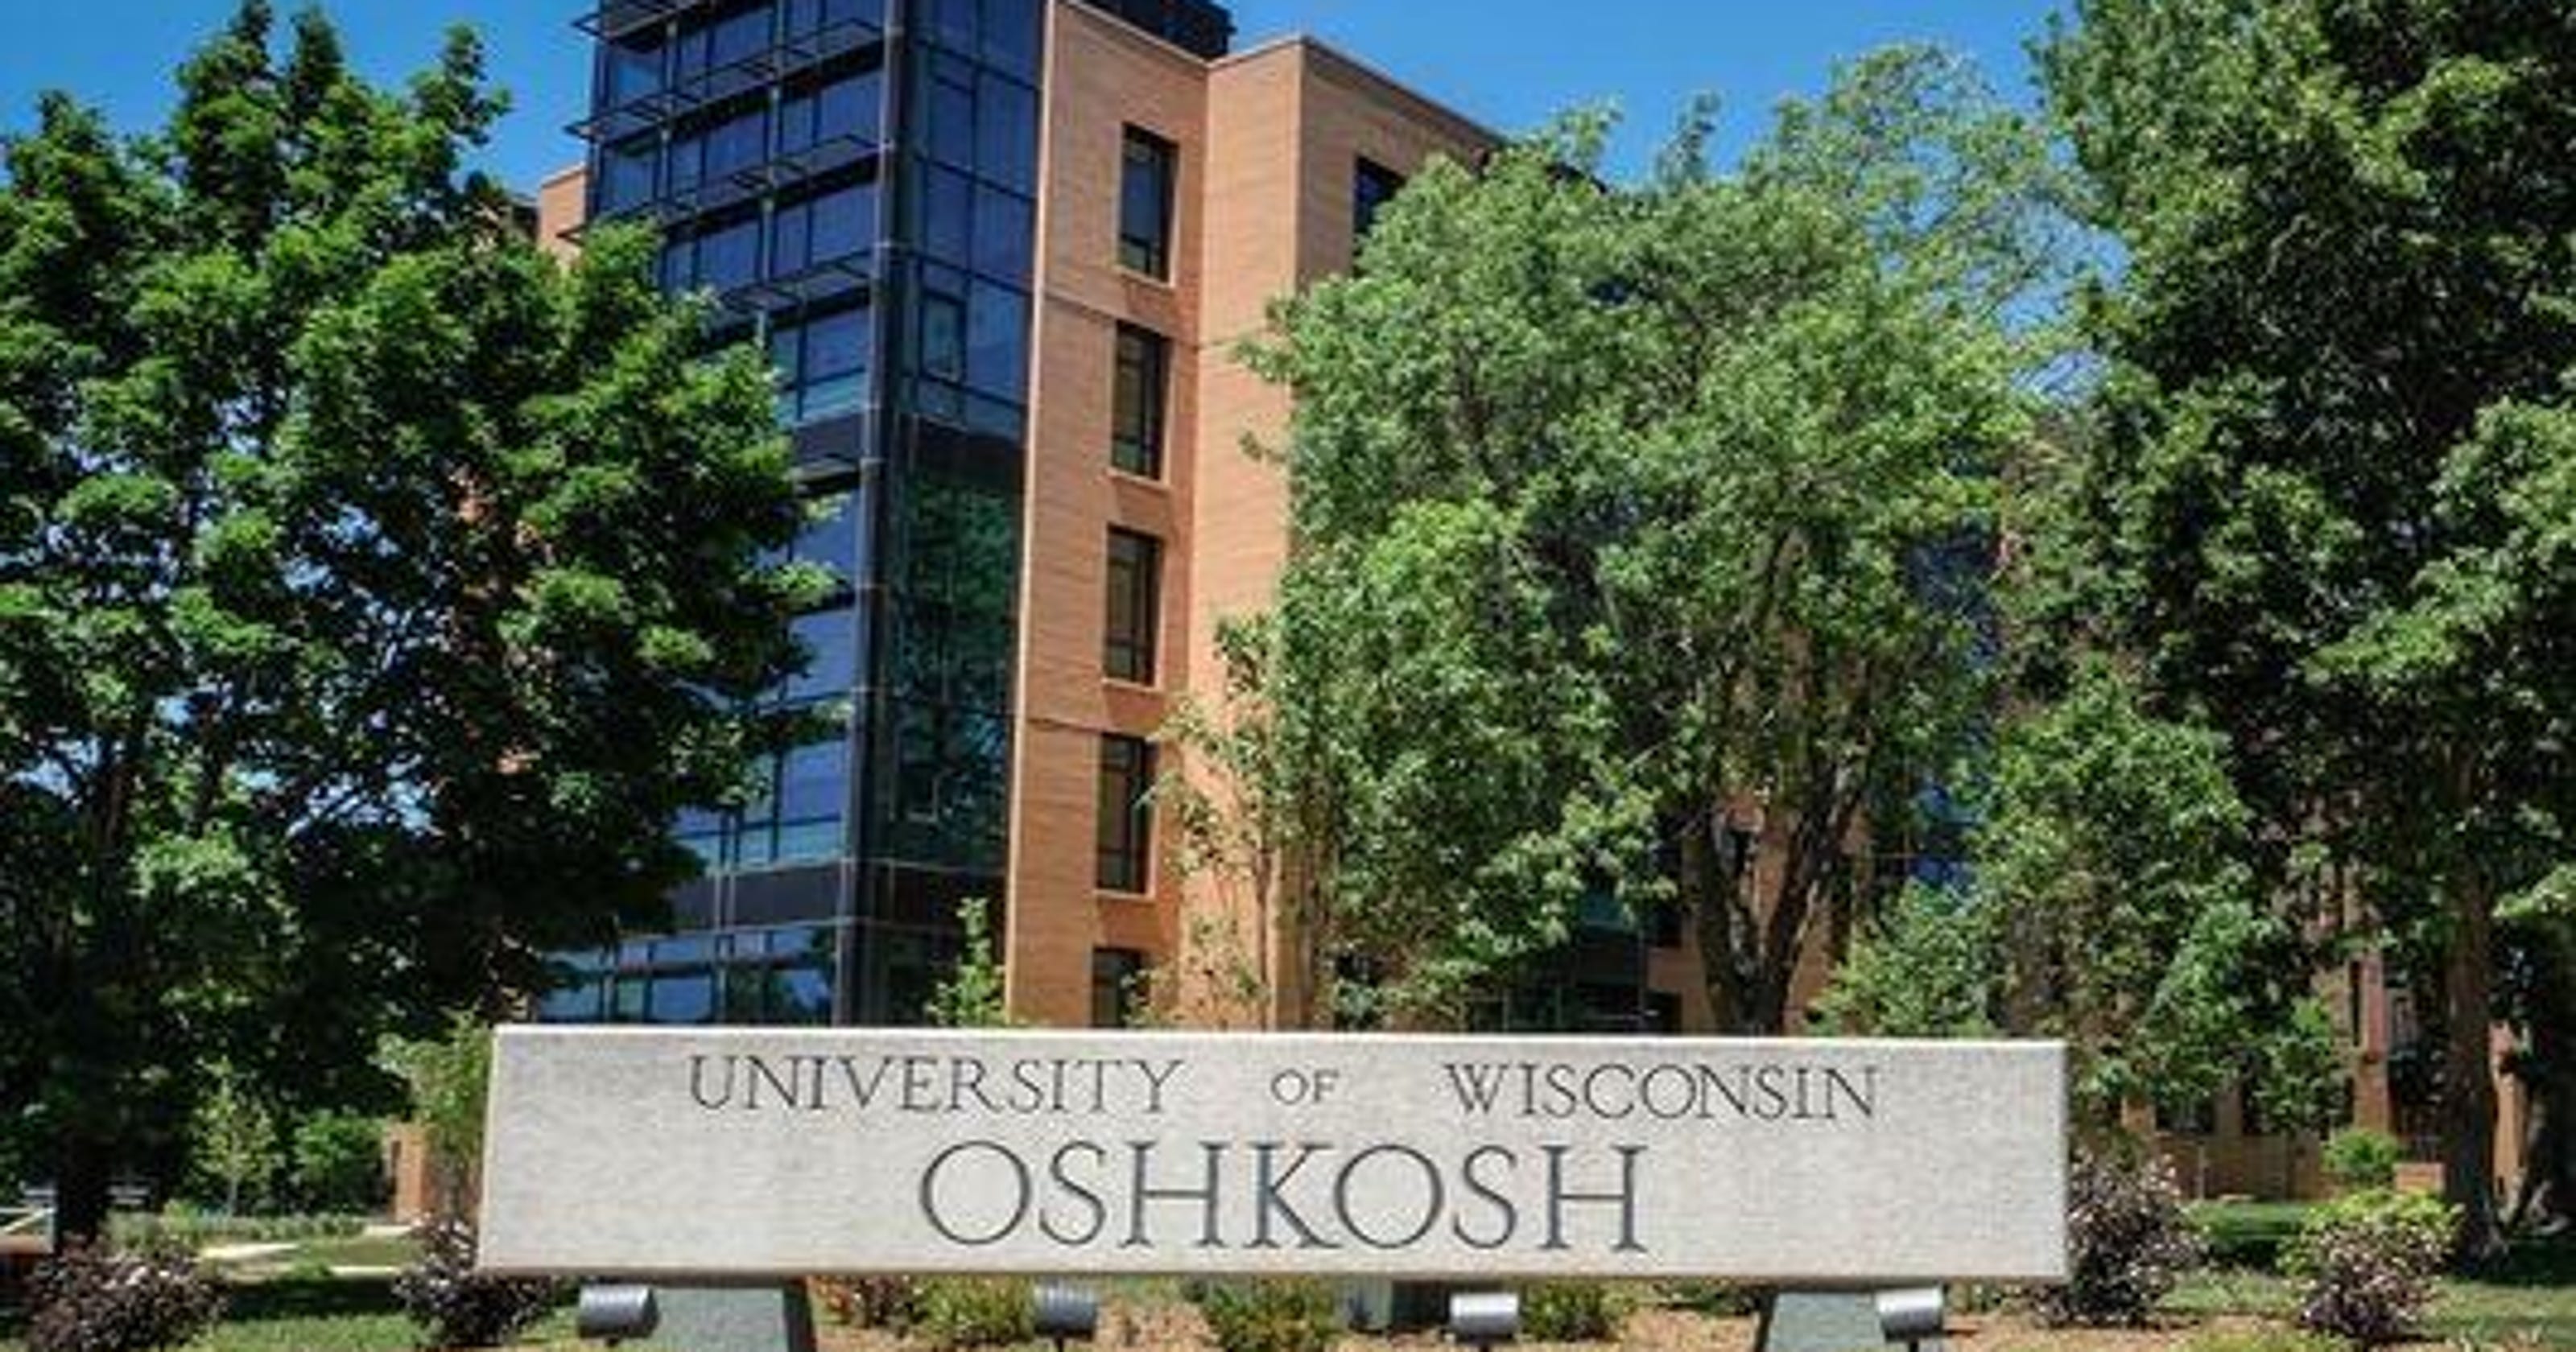 UW Oshkosh foundation seeks $18.5 million from Wisconsin taxpayers